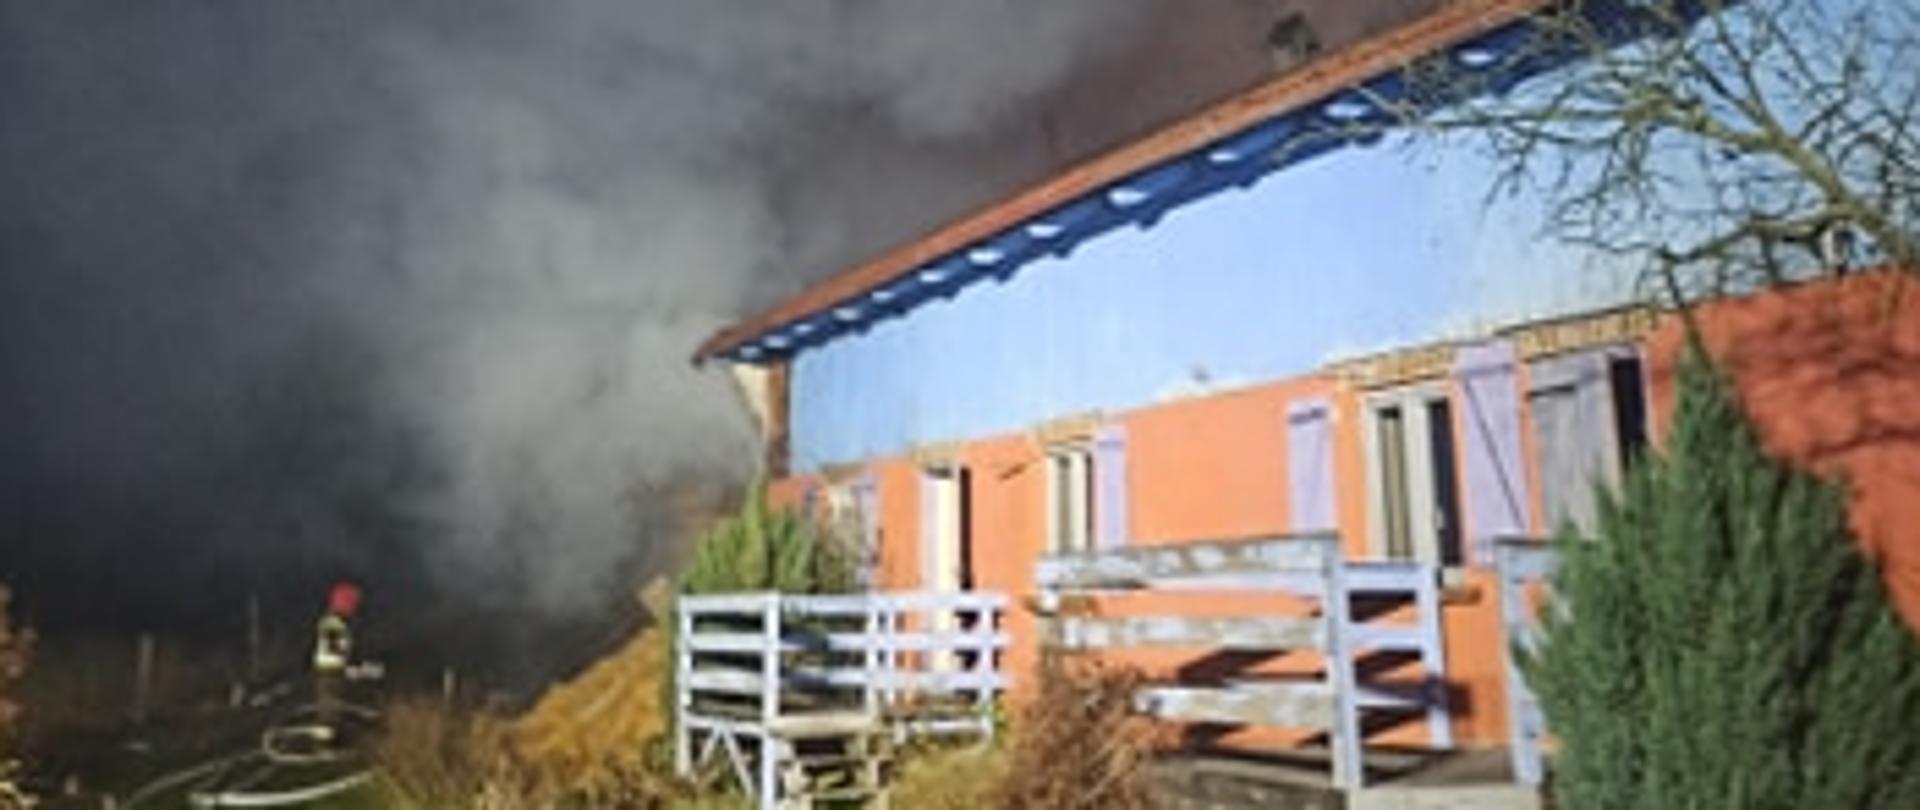 Widok budynku, który znajdował się w bezpośrednim sąsiedztwie stodoły, strażacy dokonali skutecznej obrony budynku, dzięki czemu spaliła się tylko jego niewielka część.